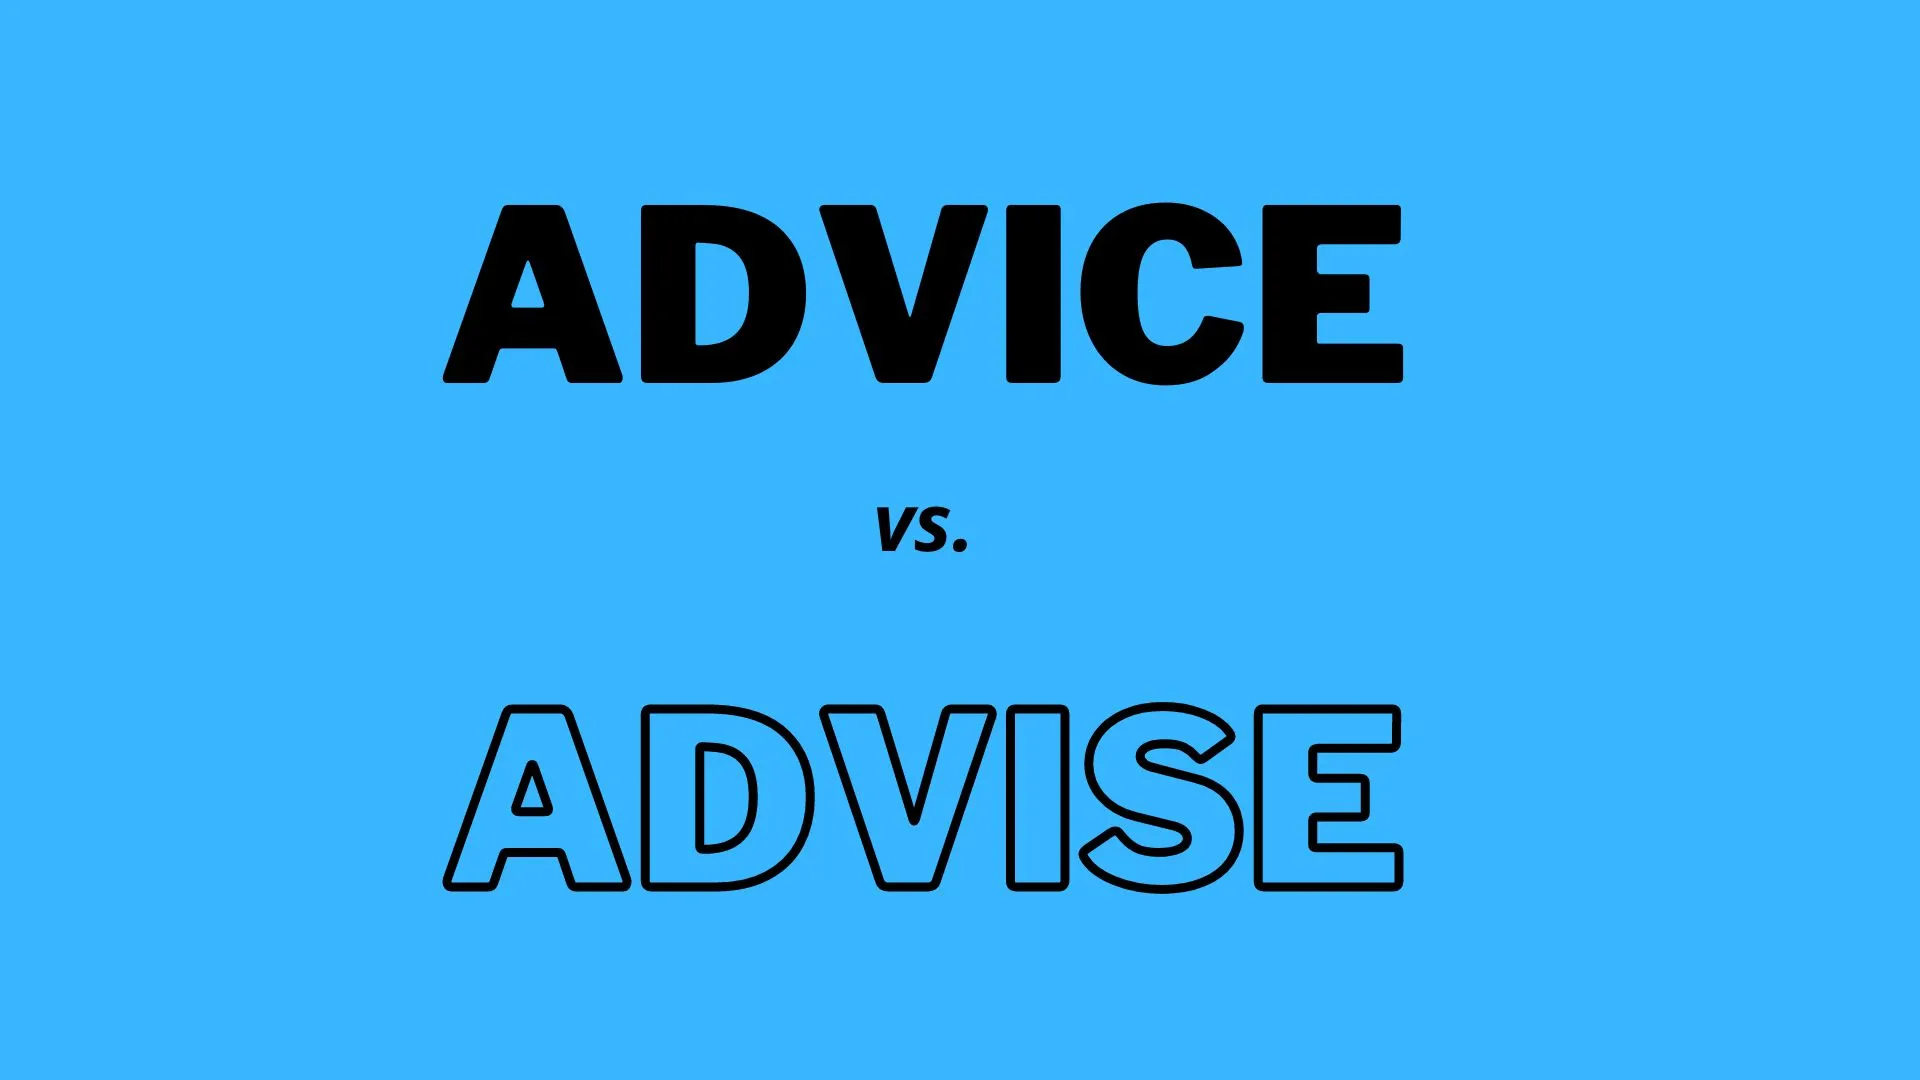 Wizualne porównanie i definicje słów "Advice" i "Advise".